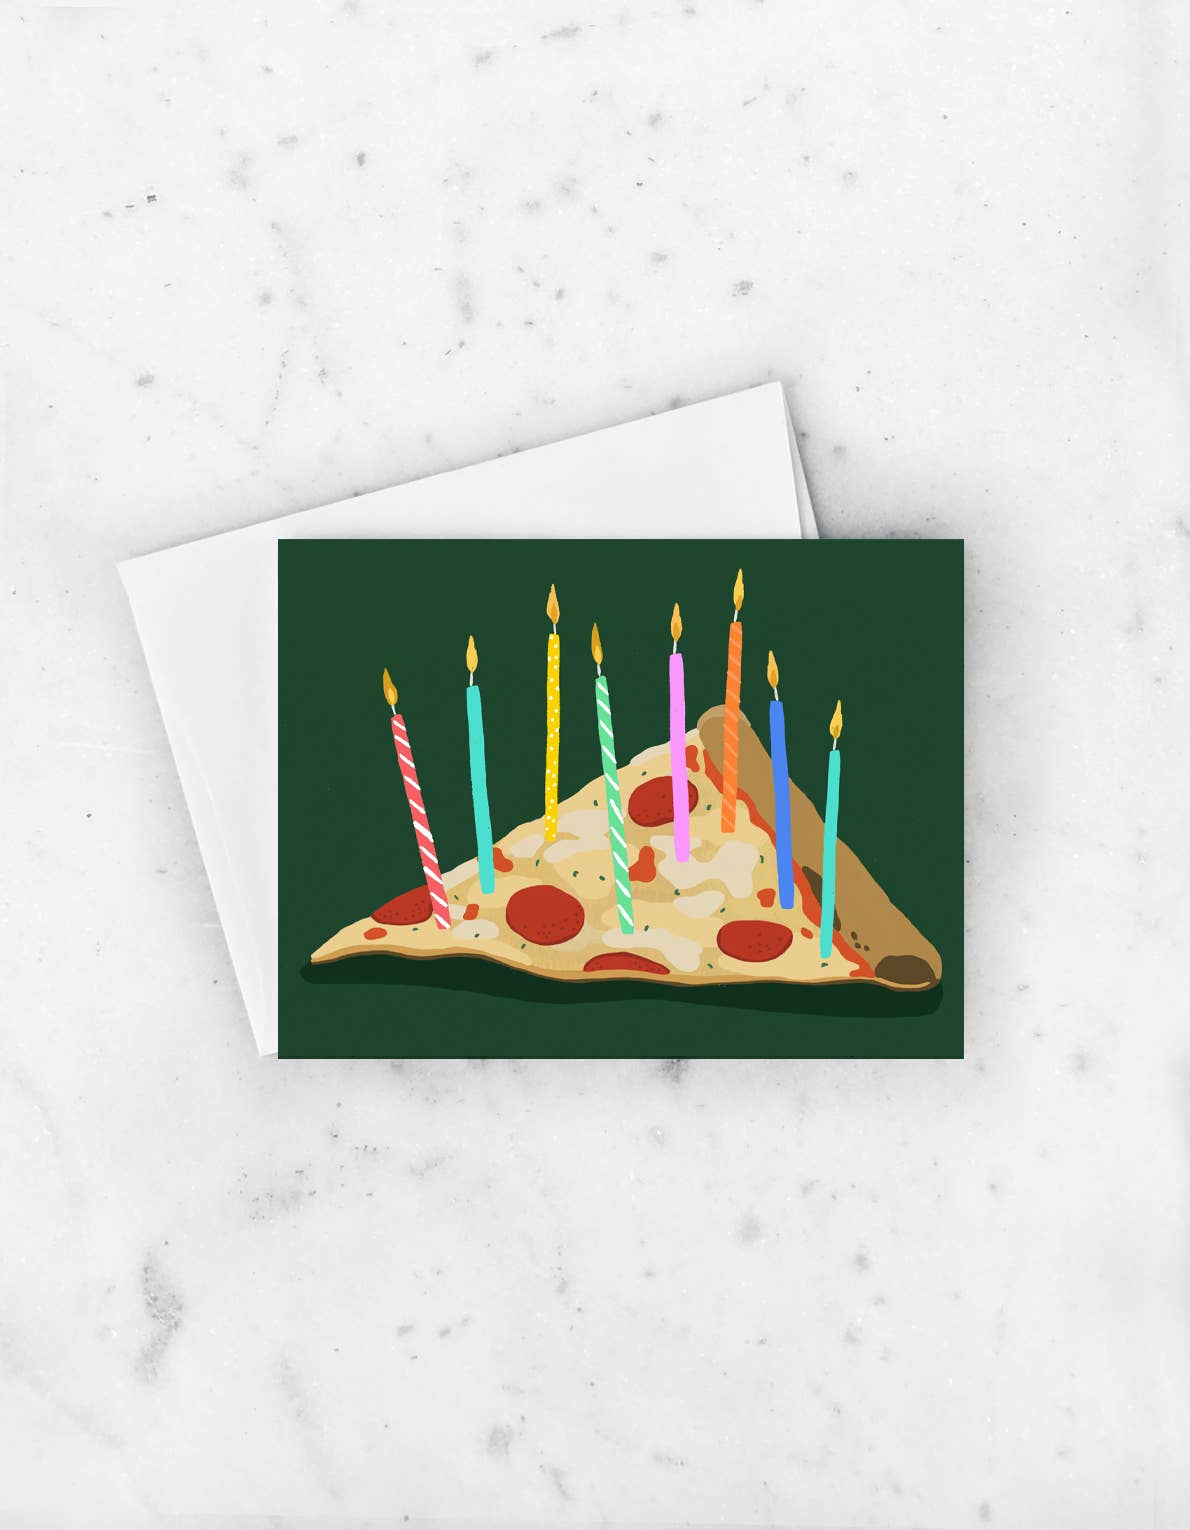 Idlewild Co. - Pizza Birthday Card - Addie Rose Boutique - Austin